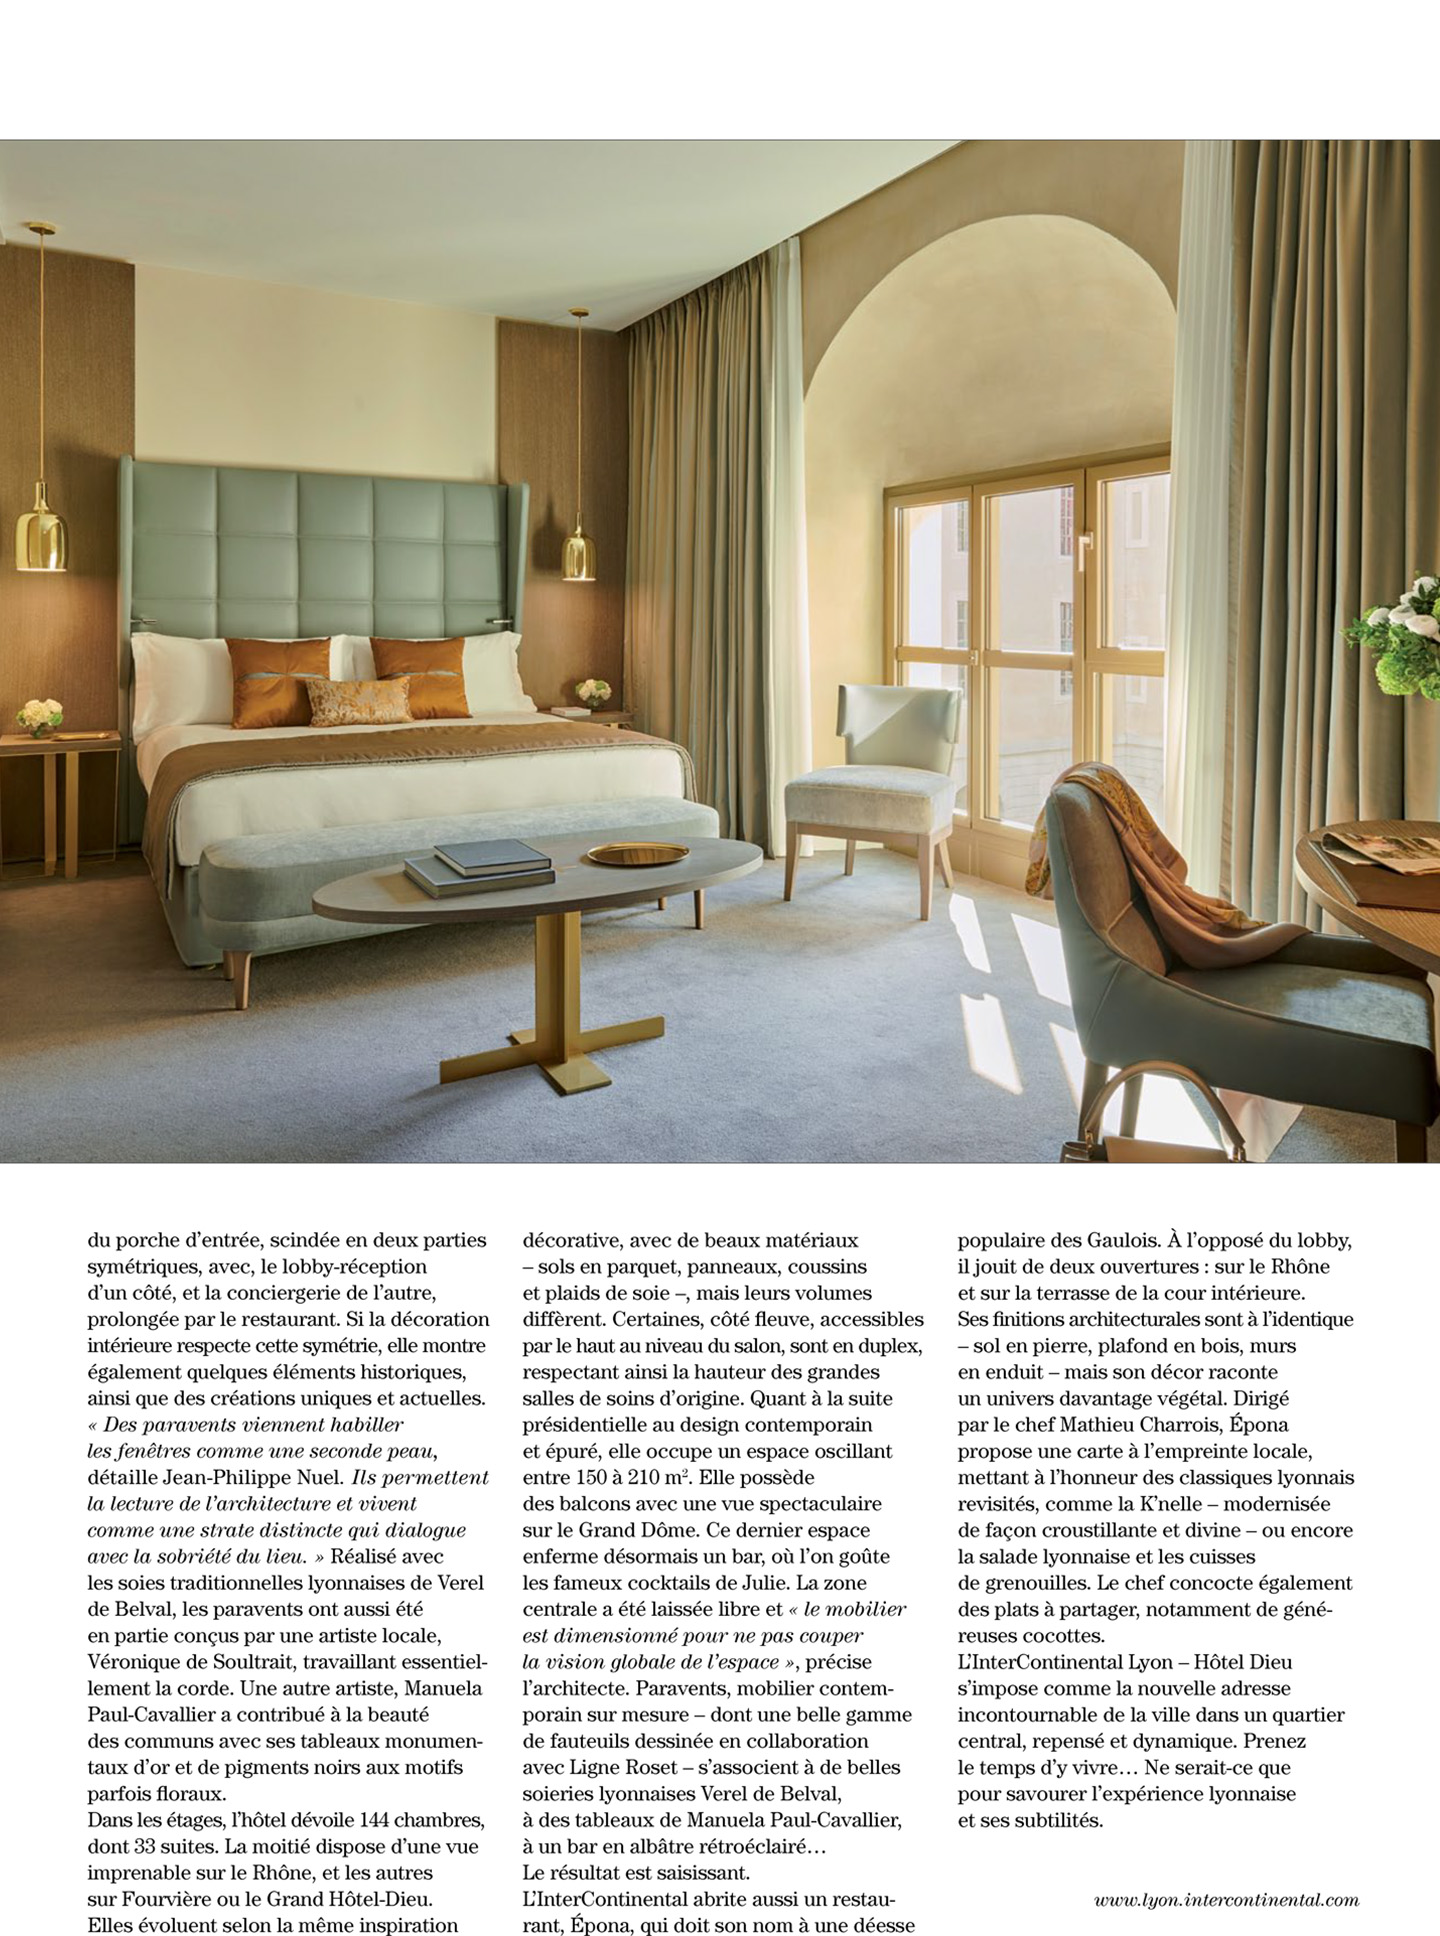 Article sur l'InterContinental Lyon Hotel Dieu réalisé par le studio jean-Philippe Nuel dans le magazine Artravel, nouvel hotel de luxe, architecture d'intérieur de luxe, patrimoine historique